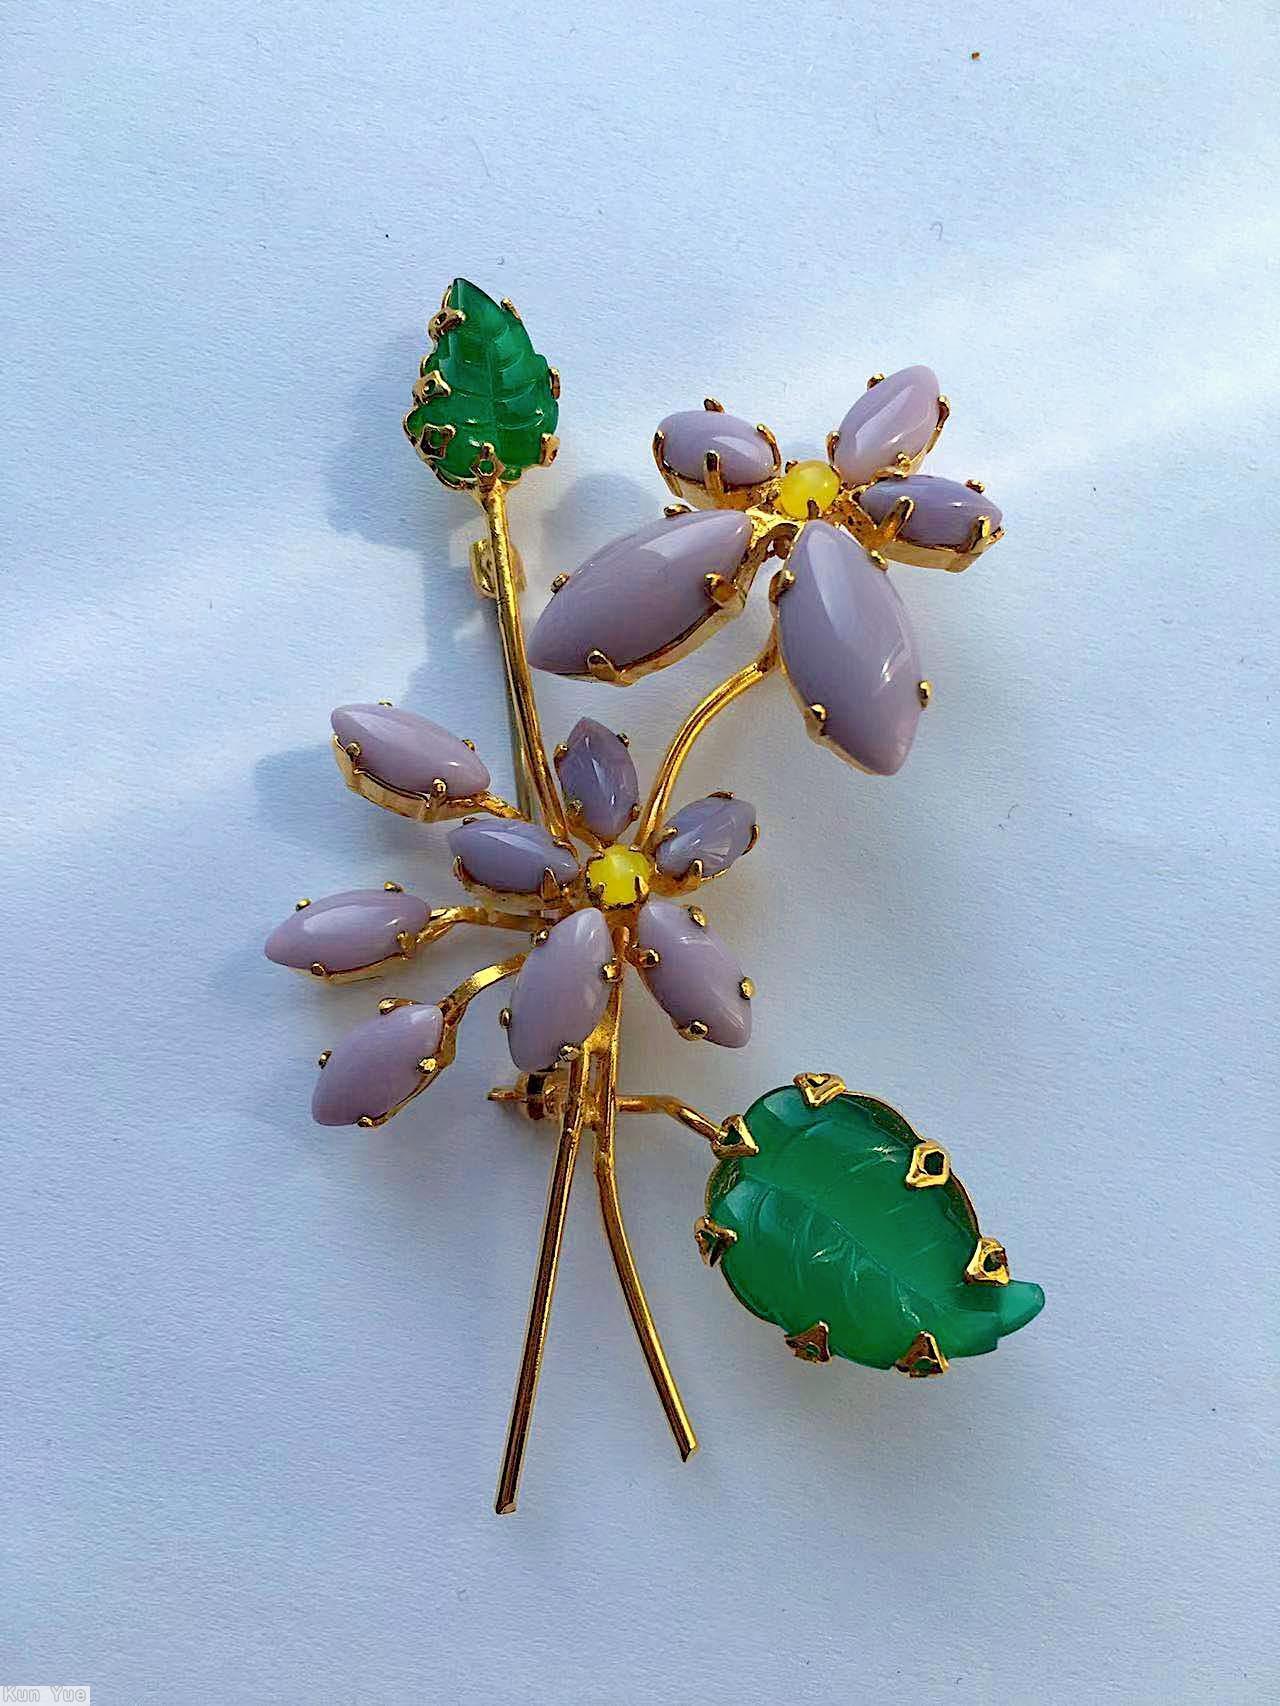 Schreiner 2 trembler flower 2 carved leaf pin lavender opaque navette green carved leaf goldtone jewelry